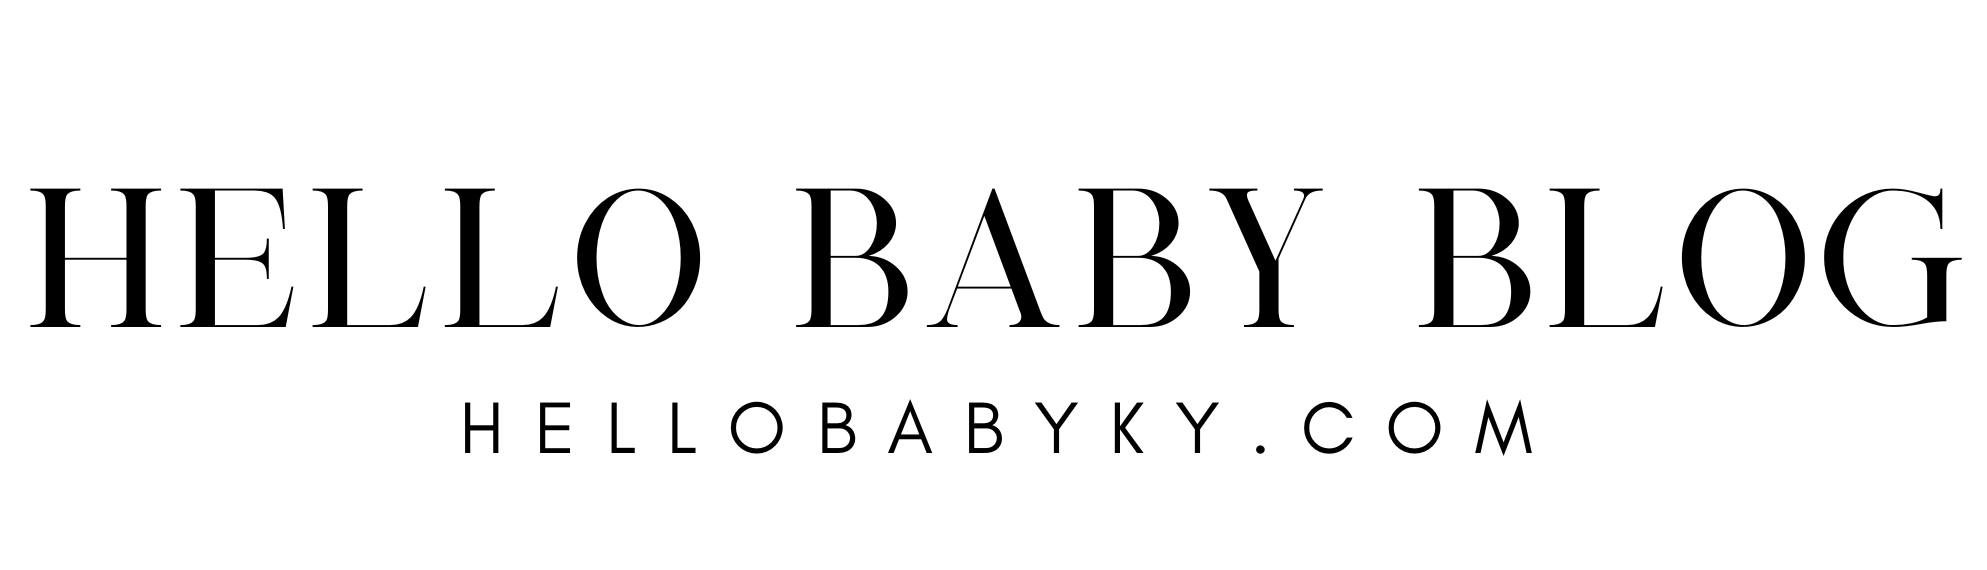 hello baby blog logo